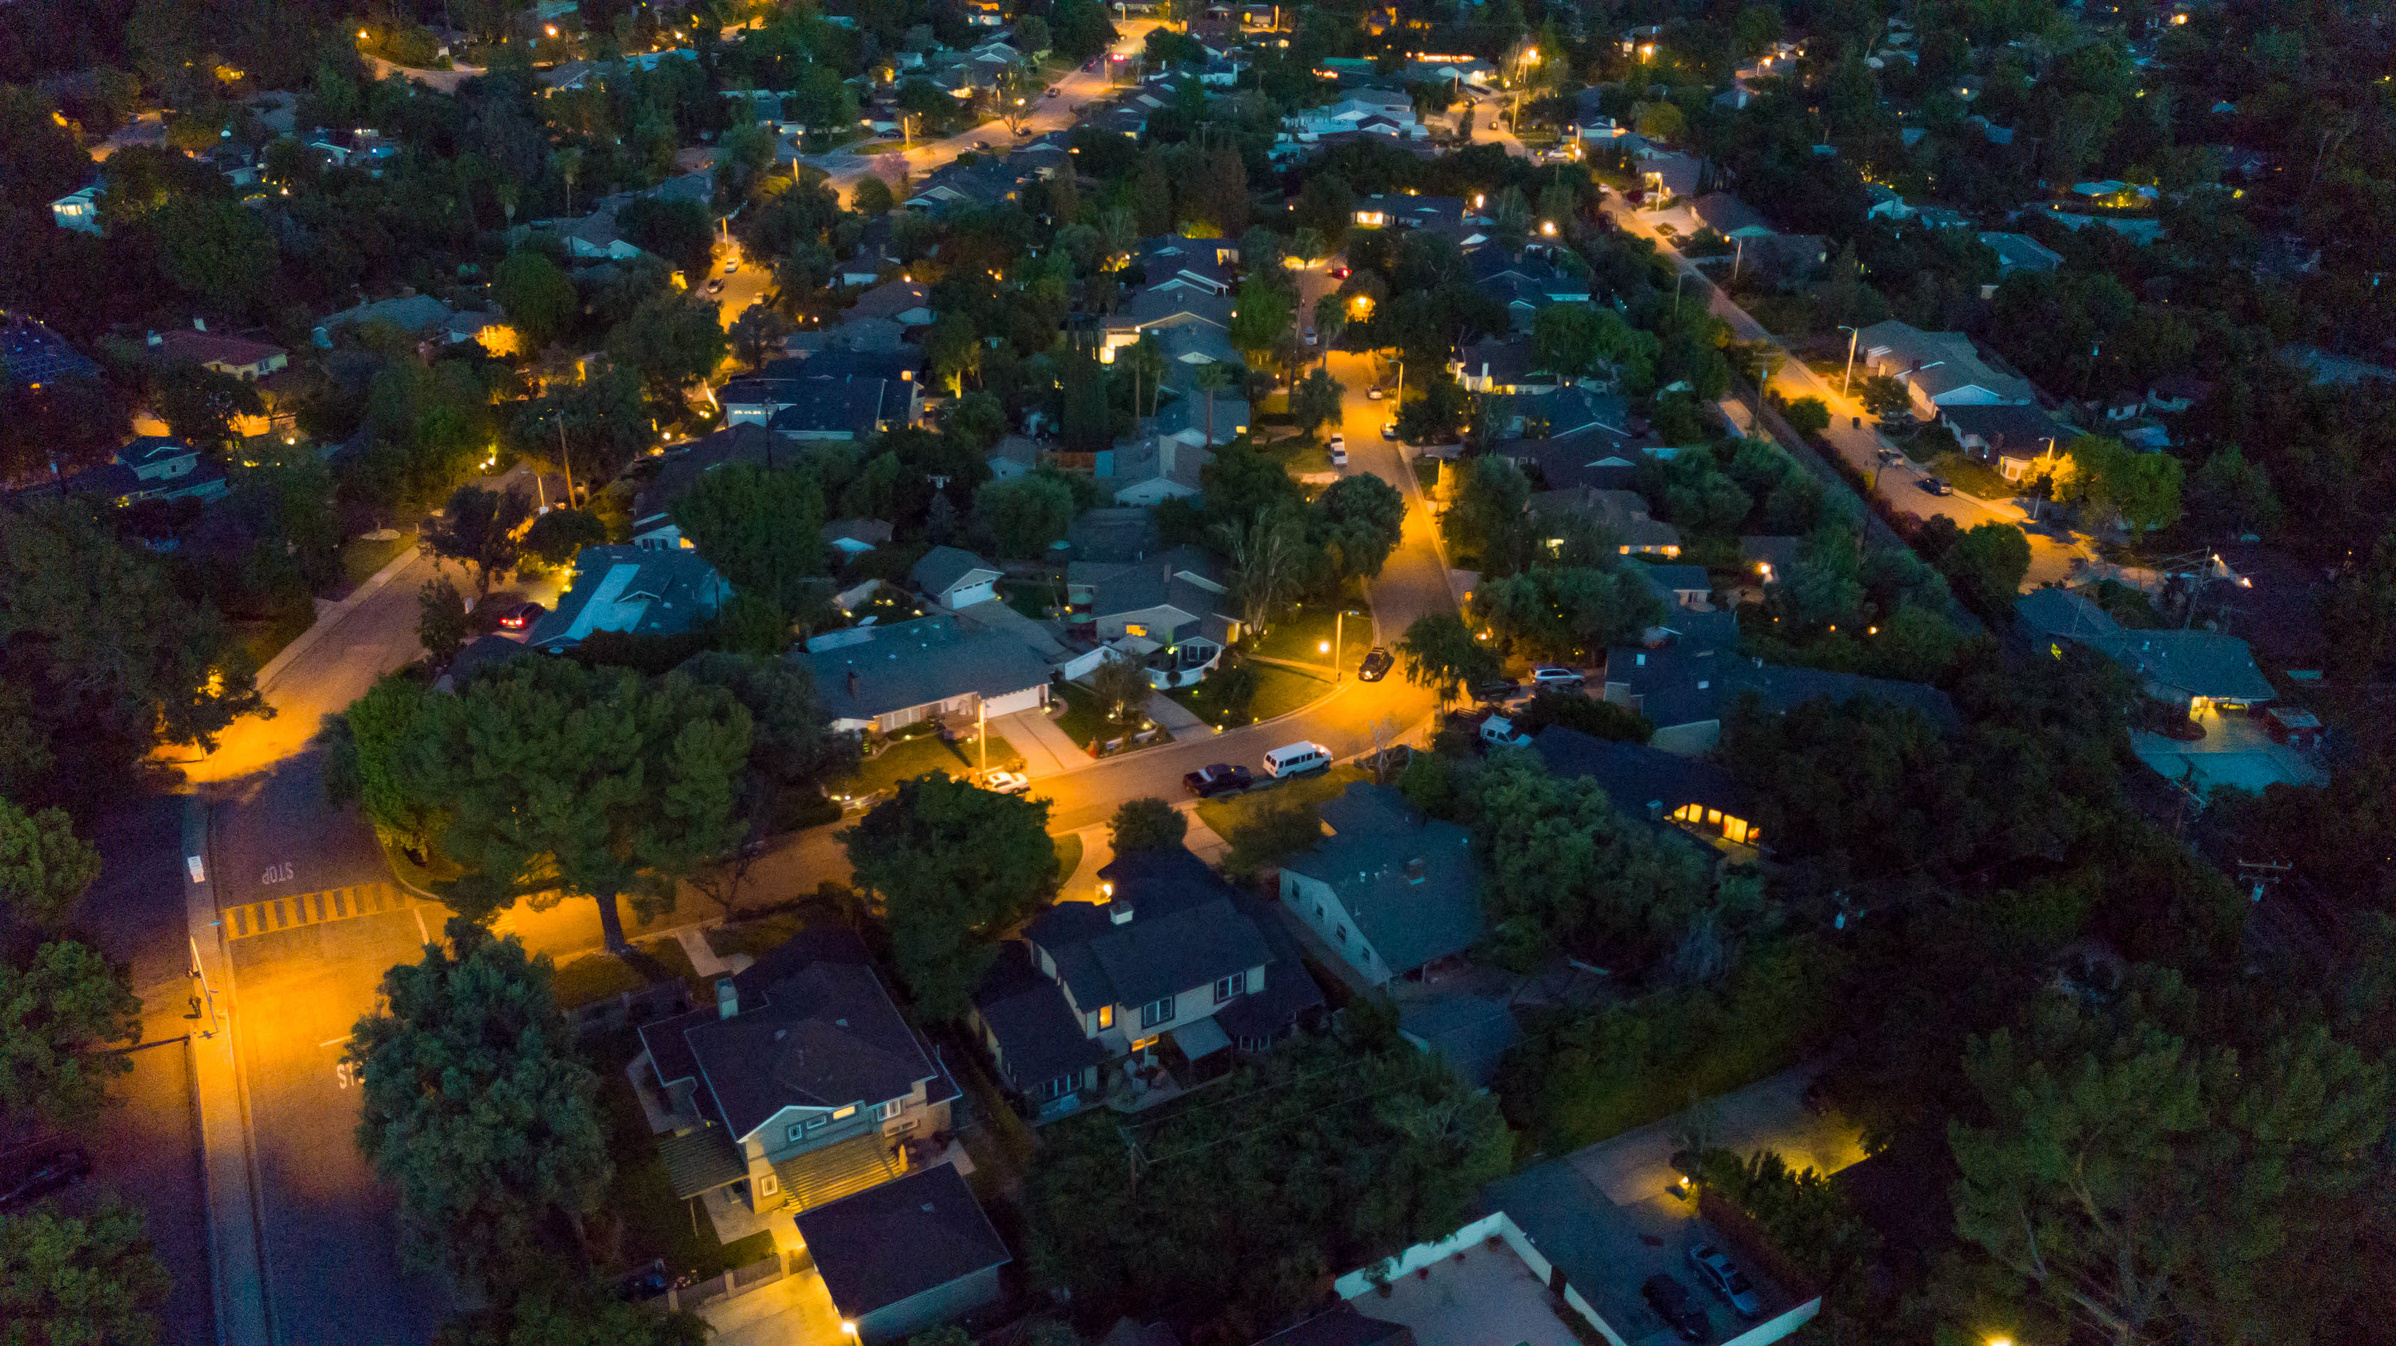 Aerial Residential Neighborhood at Night